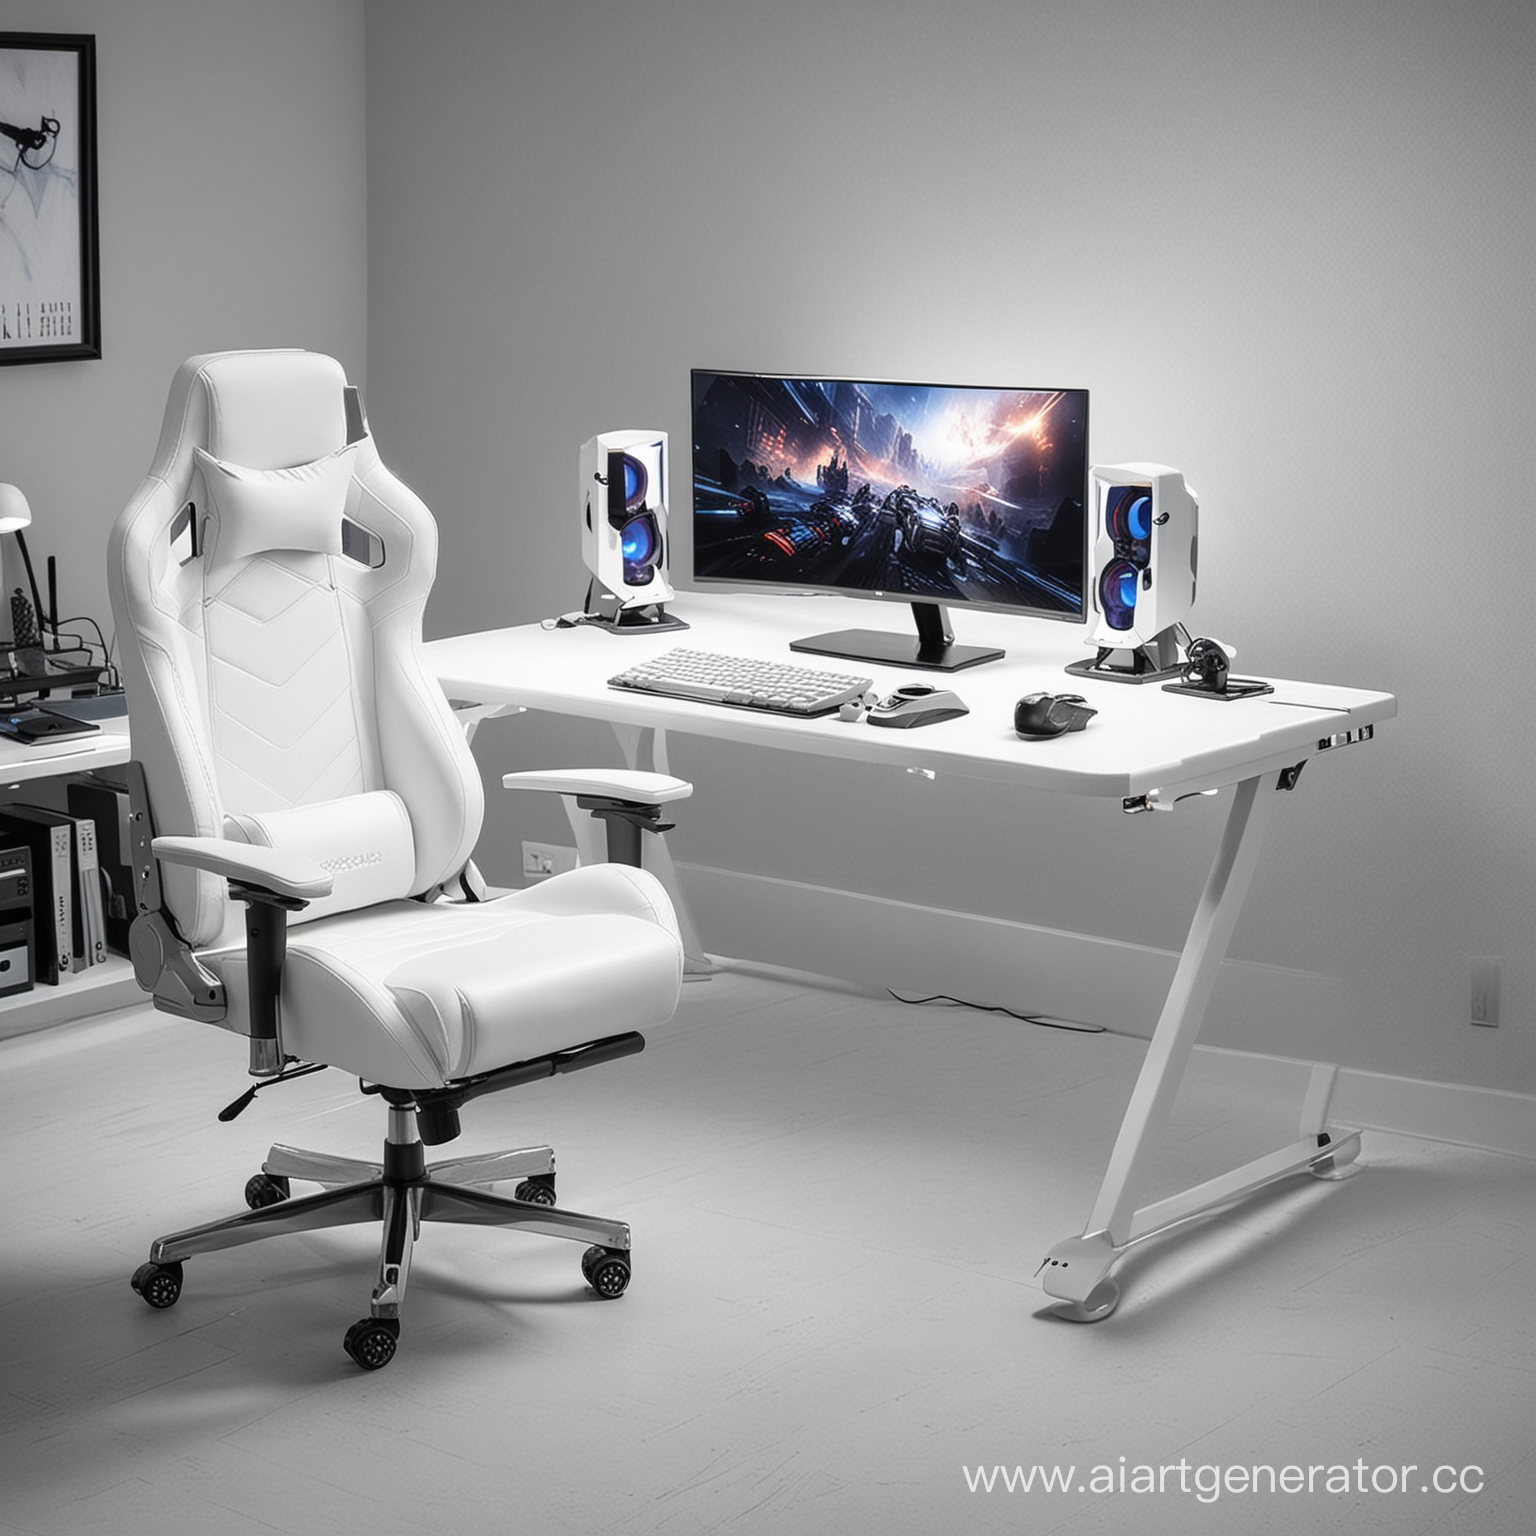 Зона для компьютерных игр: игровое кресло, игровой компьютерной стол, компьютер современный с подсветкой, клавиатура, мышка, колонки. Всё в белом цвете